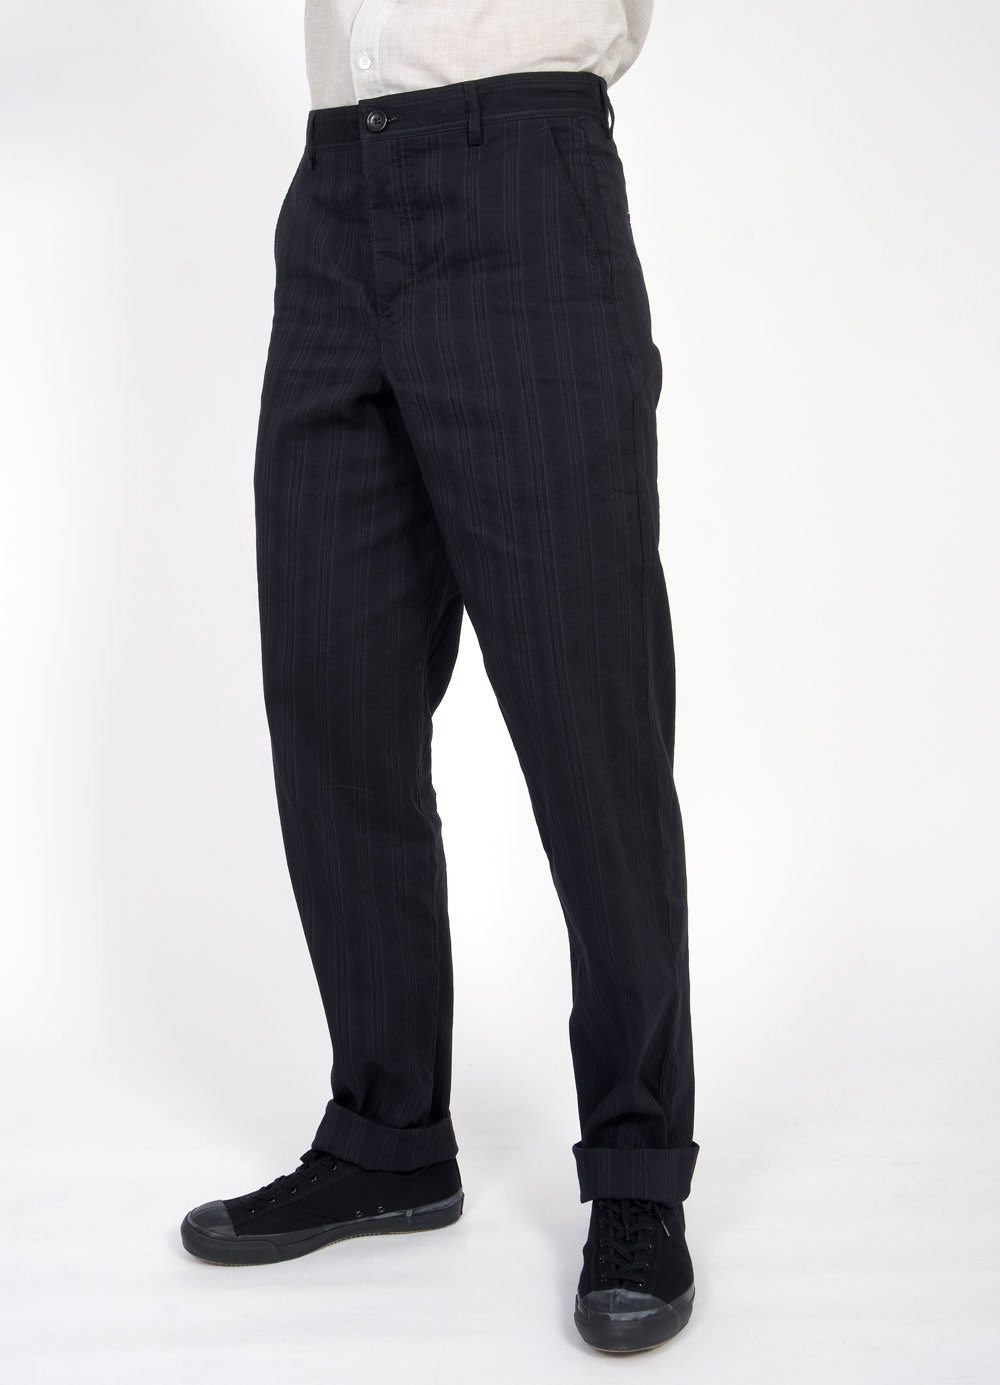 KEN | Wide Cut Trousers | Black Stripe | €295 -HANSEN Garments- HANSEN Garments